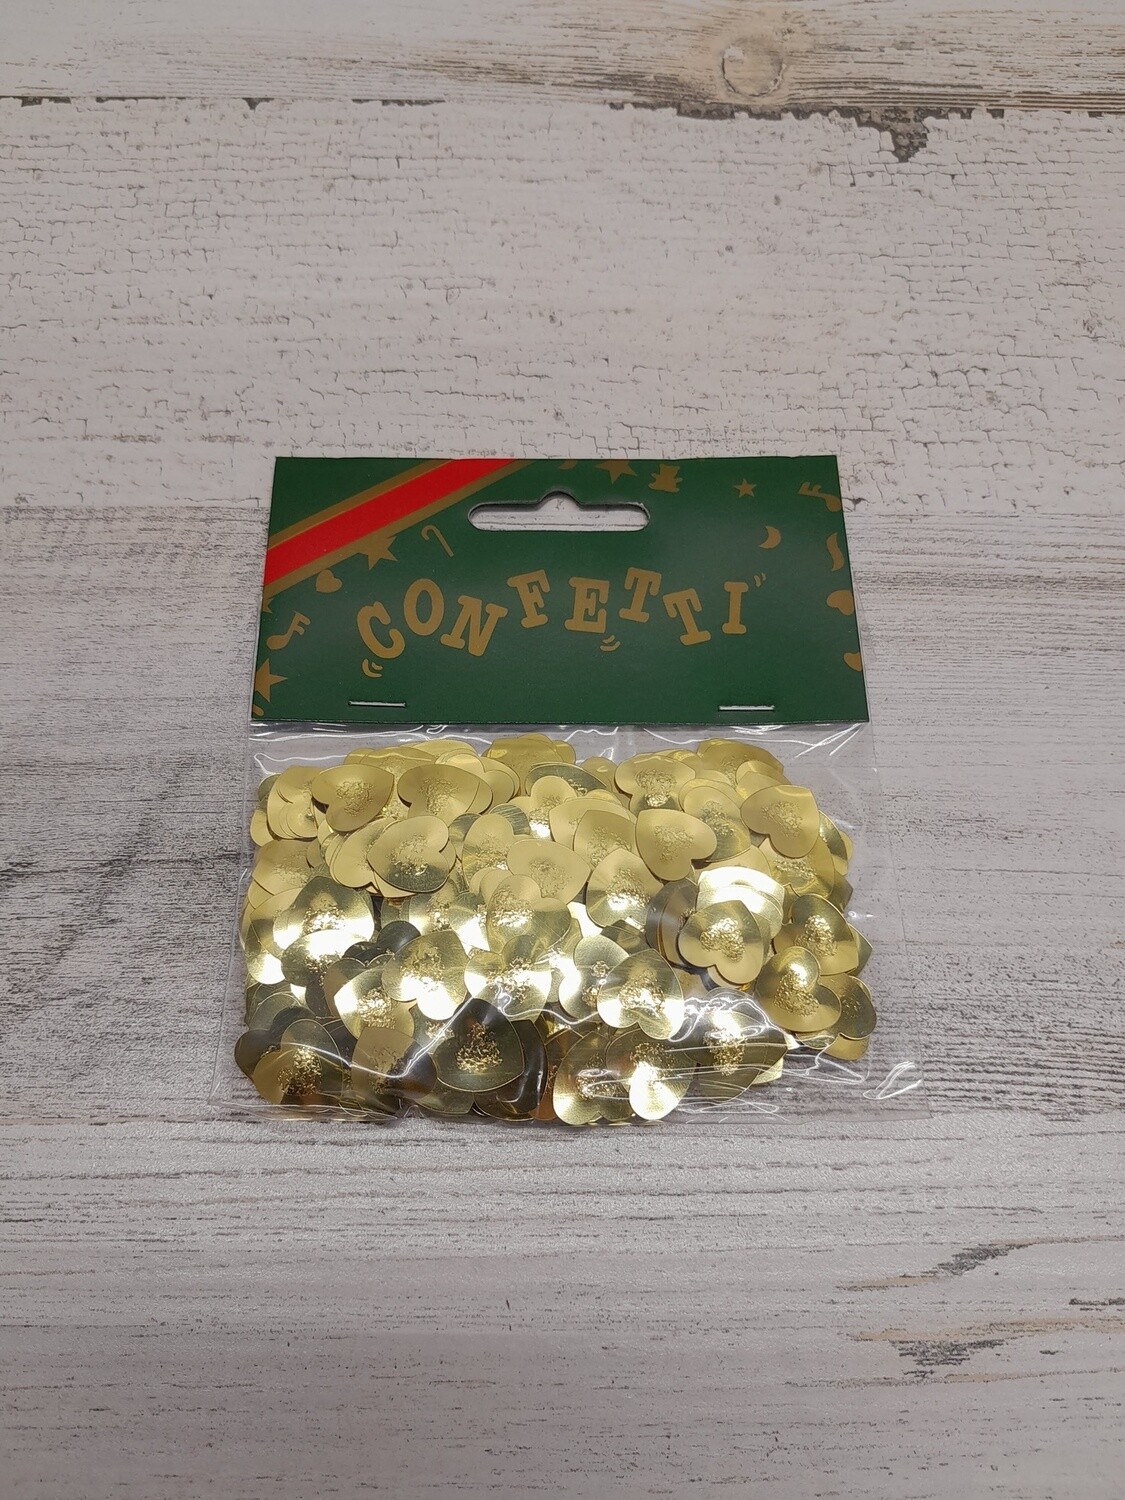 Heart Confetti - Gold